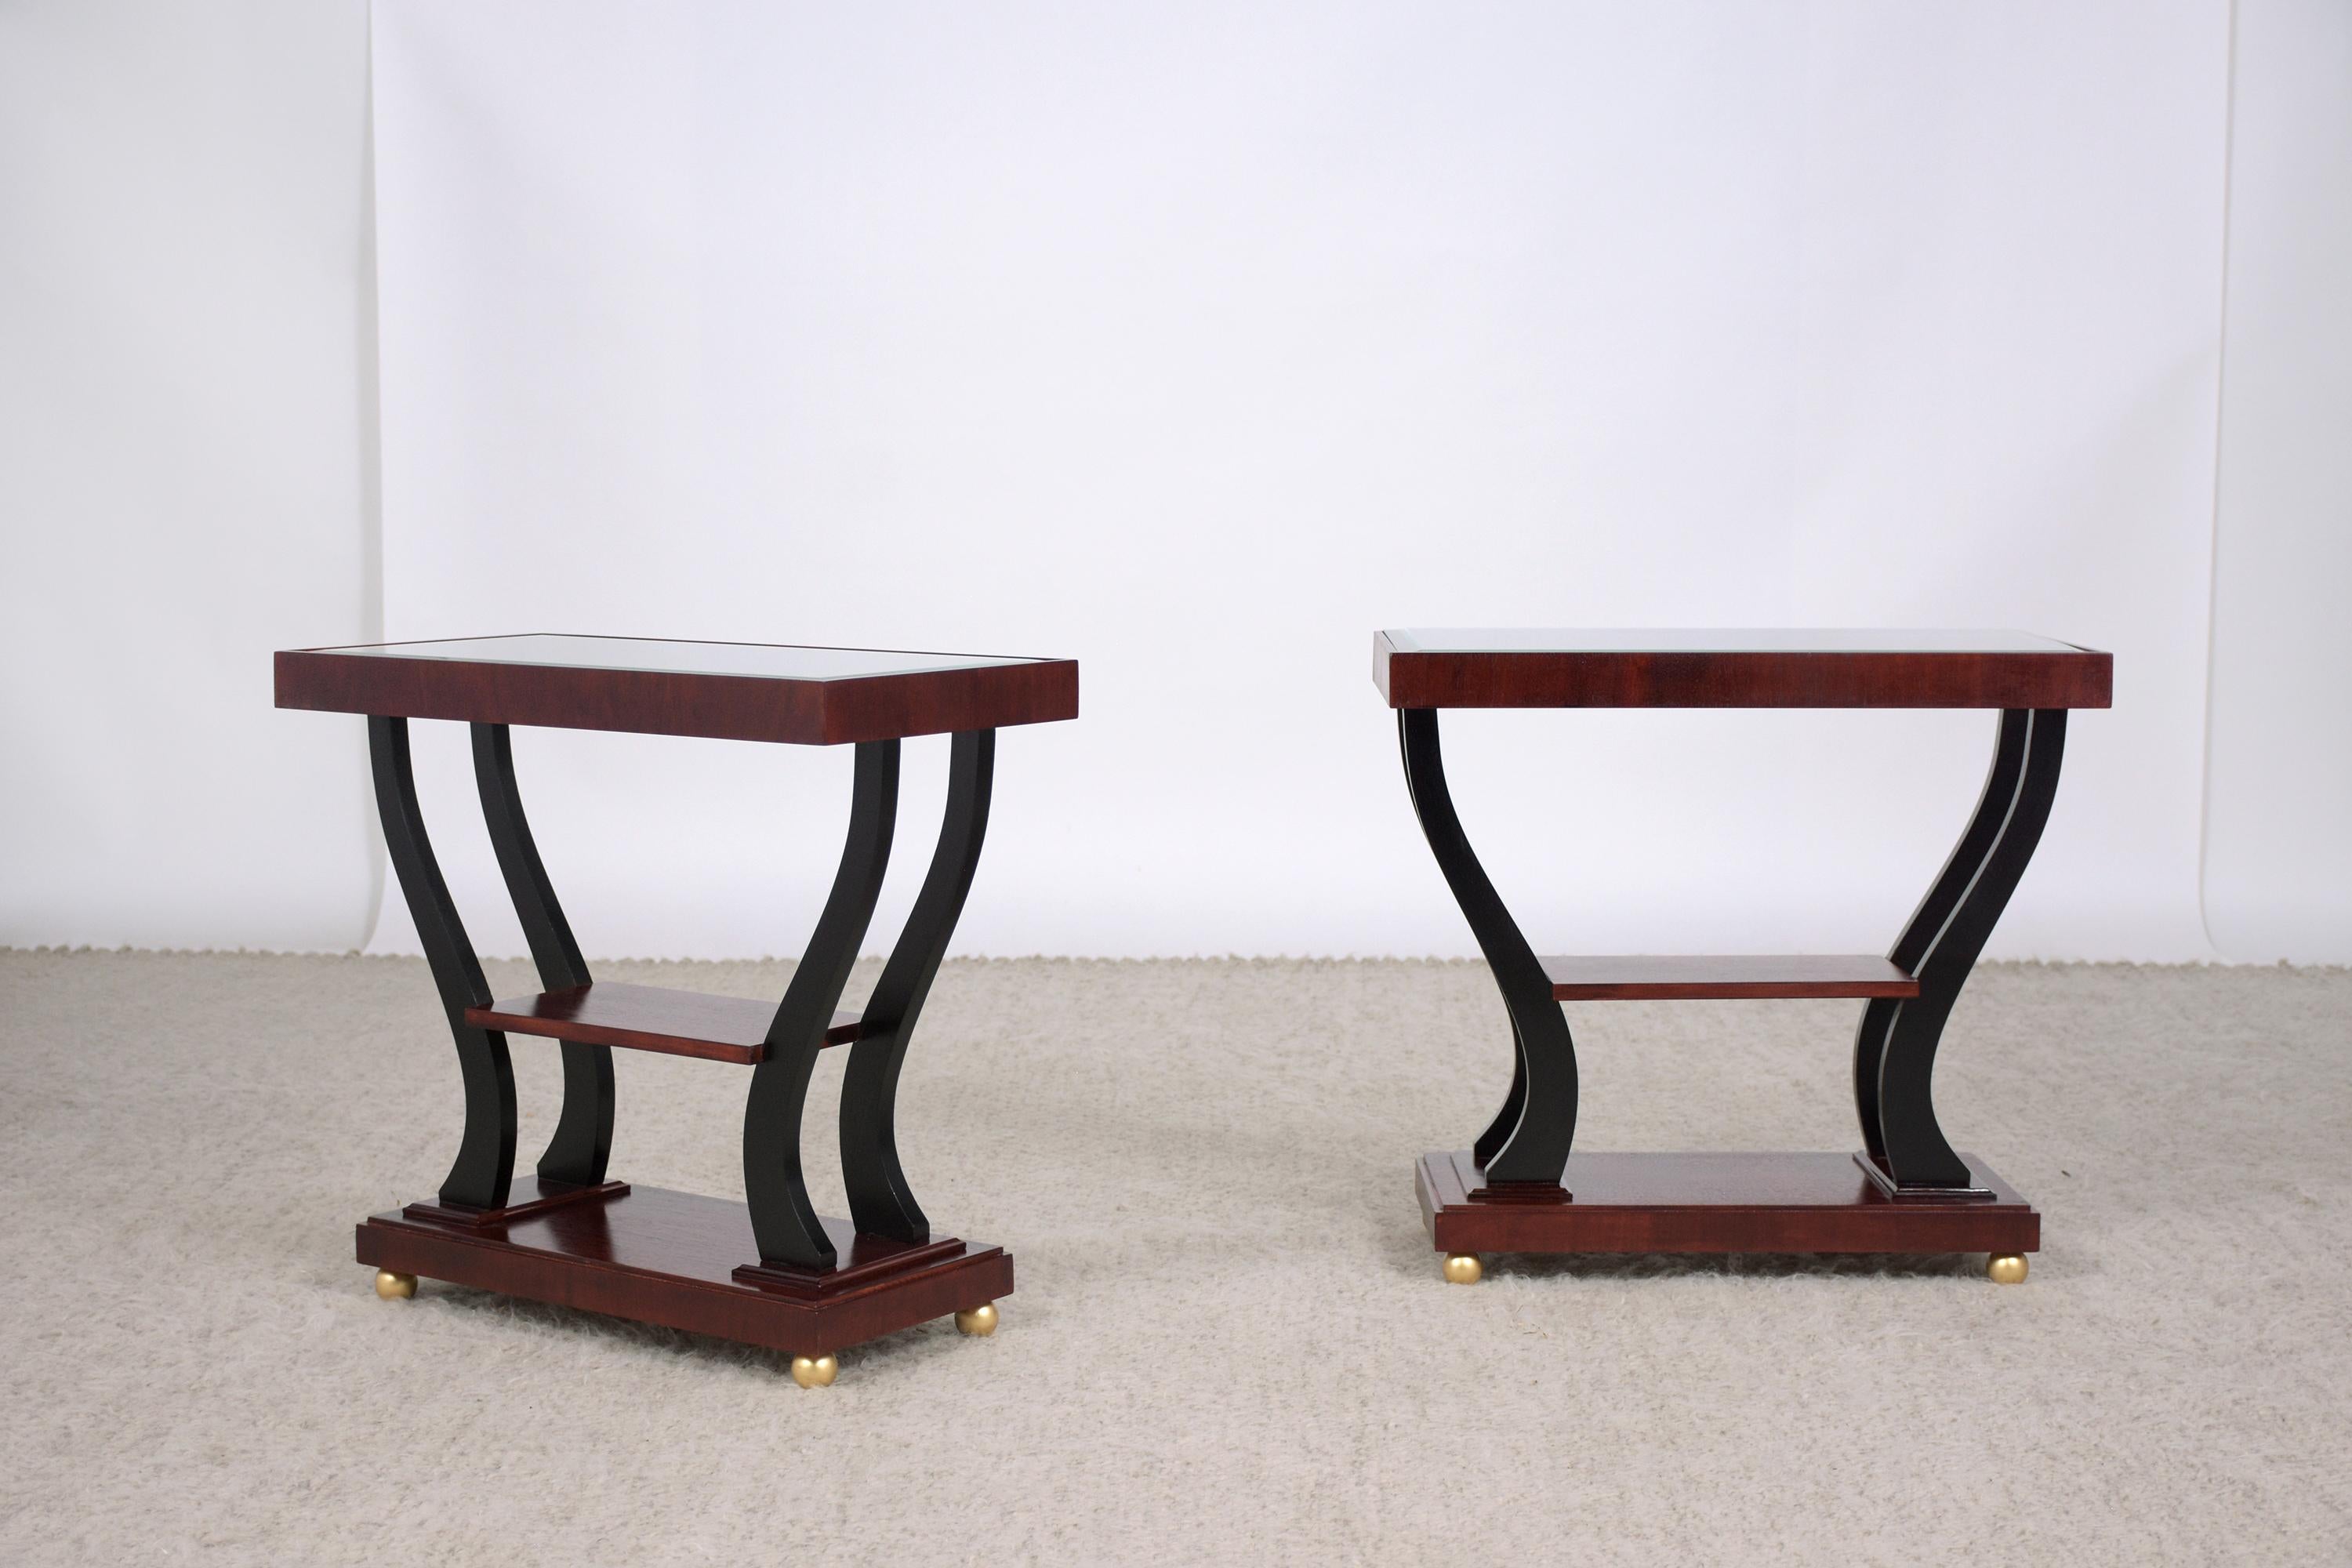 Une paire extraordinaire de tables d'appoint art déco des années 1950 en excellent état, fabriquées à la main en noyer et entièrement restaurées par notre équipe d'artisans. Ces fabuleuses pièces présentent de riches accents de couleur noyer et